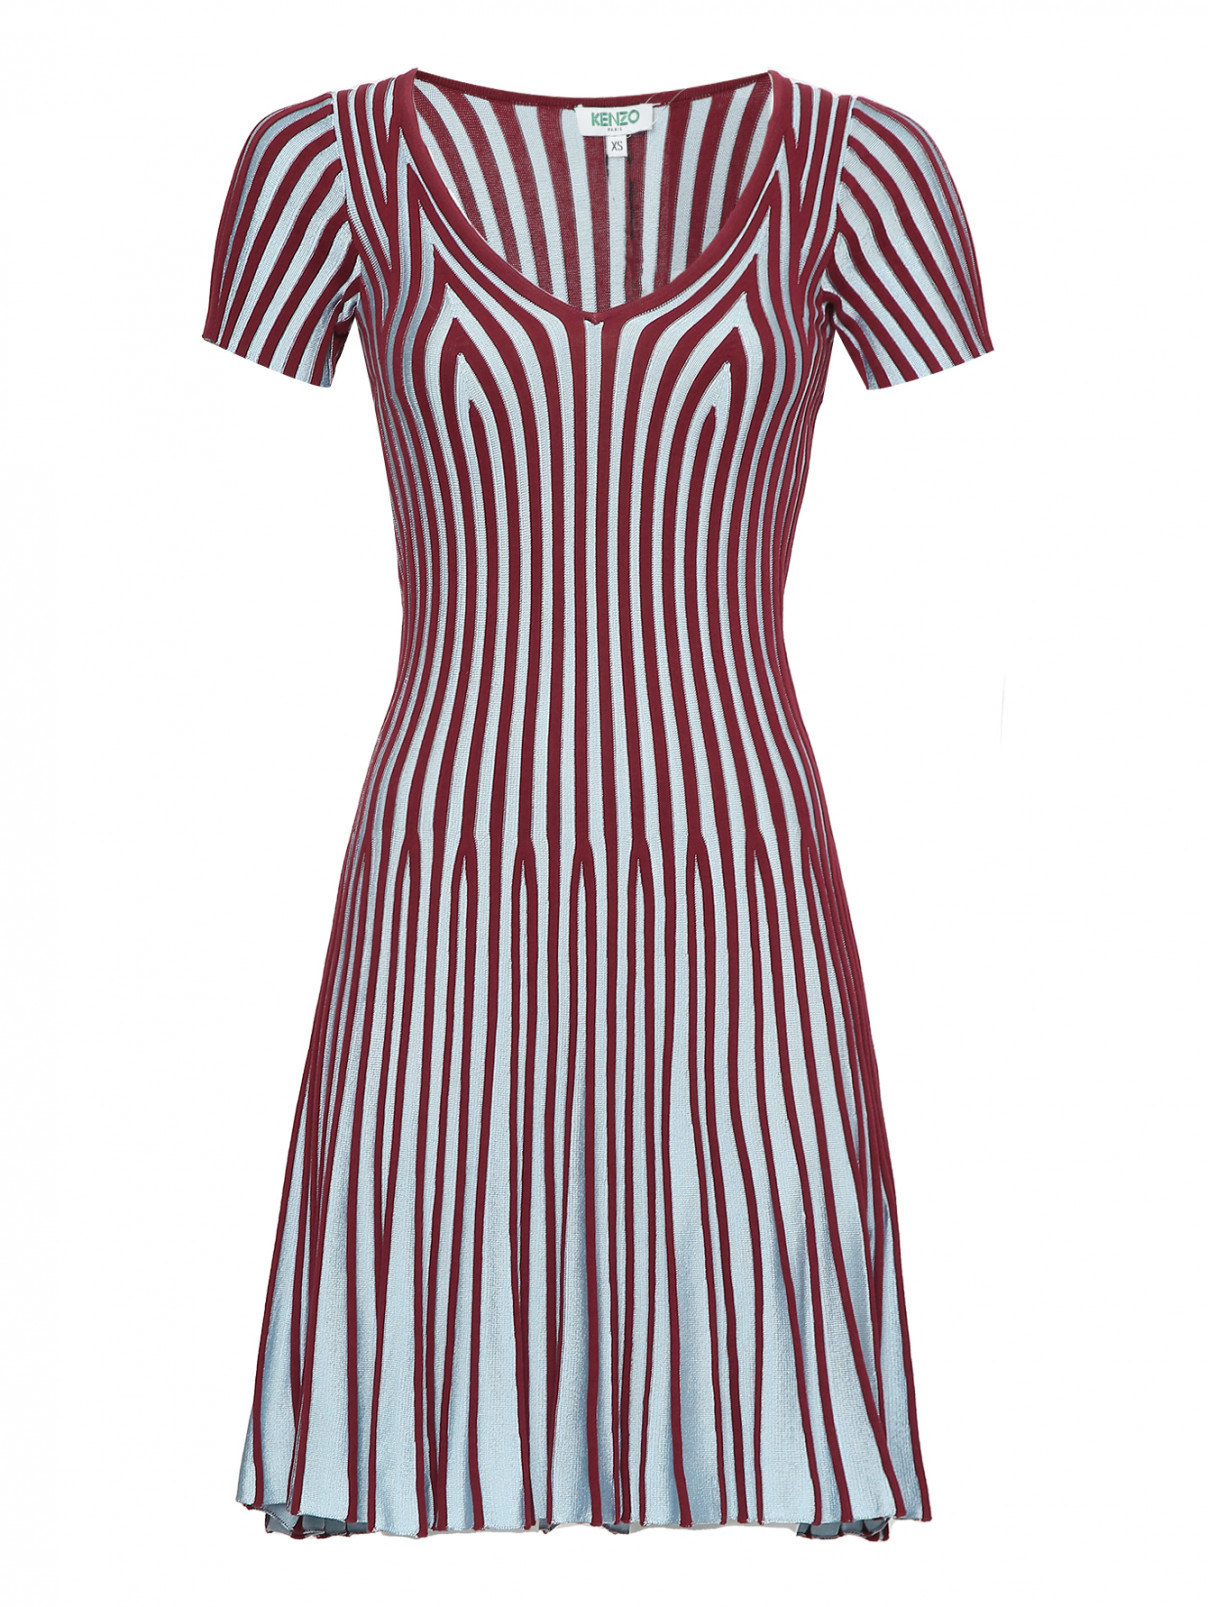 Трикотажное платье в полоску Kenzo  –  Общий вид  – Цвет:  Мультиколор